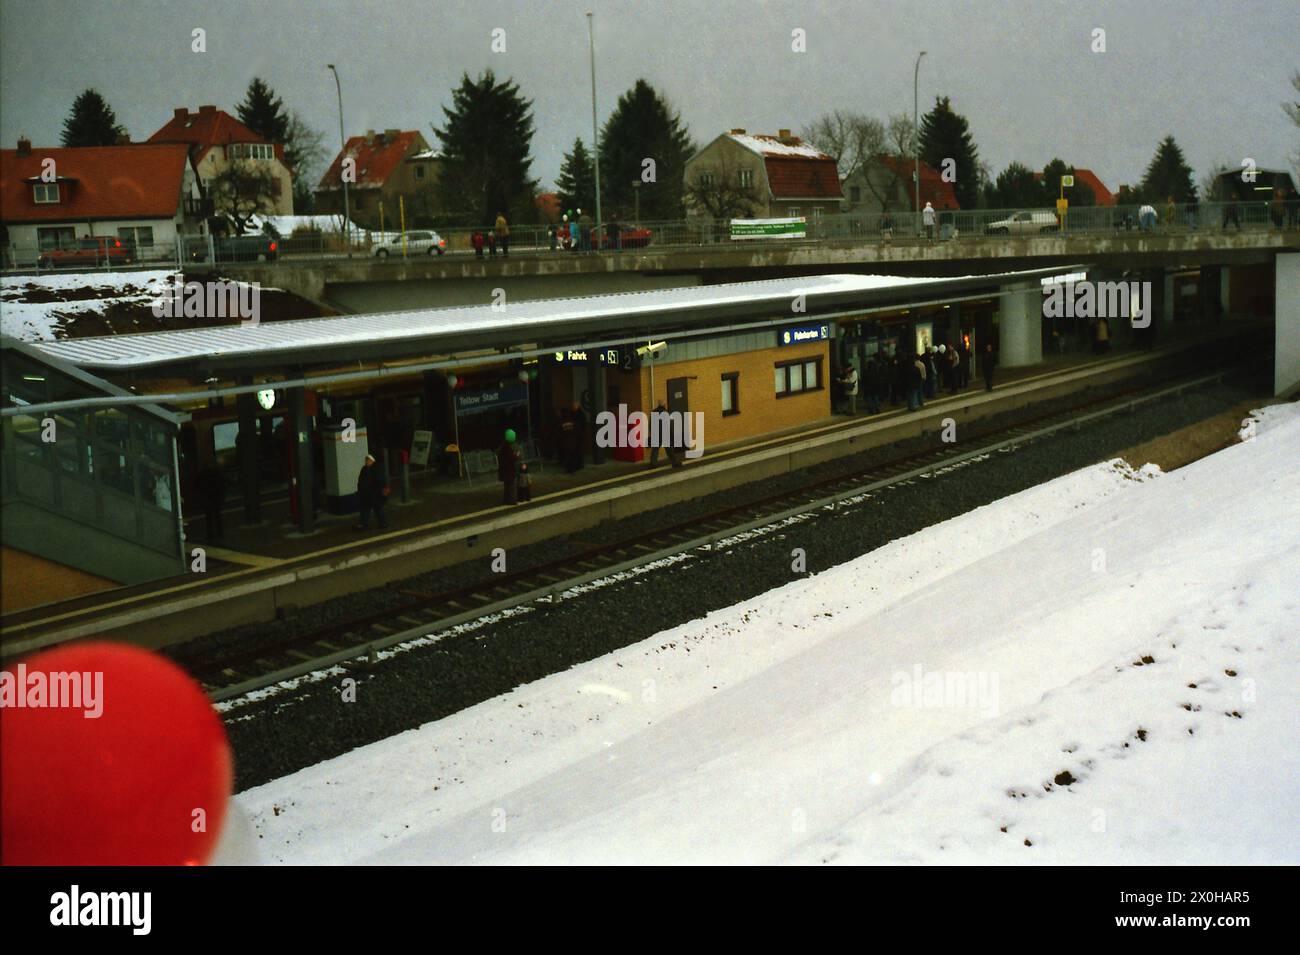 Am 24. Februar 2005 wurde die Strecke über Lichterfelde Süd hinaus bis Teltow Stadt verlängert. Das Bild zeigt den neuen Endbahnhof in Teltow Stadt am Eröffnungstag. Im Gegensatz zur Vergangenheit führte die Strecke bis Teltow außerhalb der Stadt, bis die Mauer errichtet wurde. [Automatisierte Übersetzung] Stockfoto